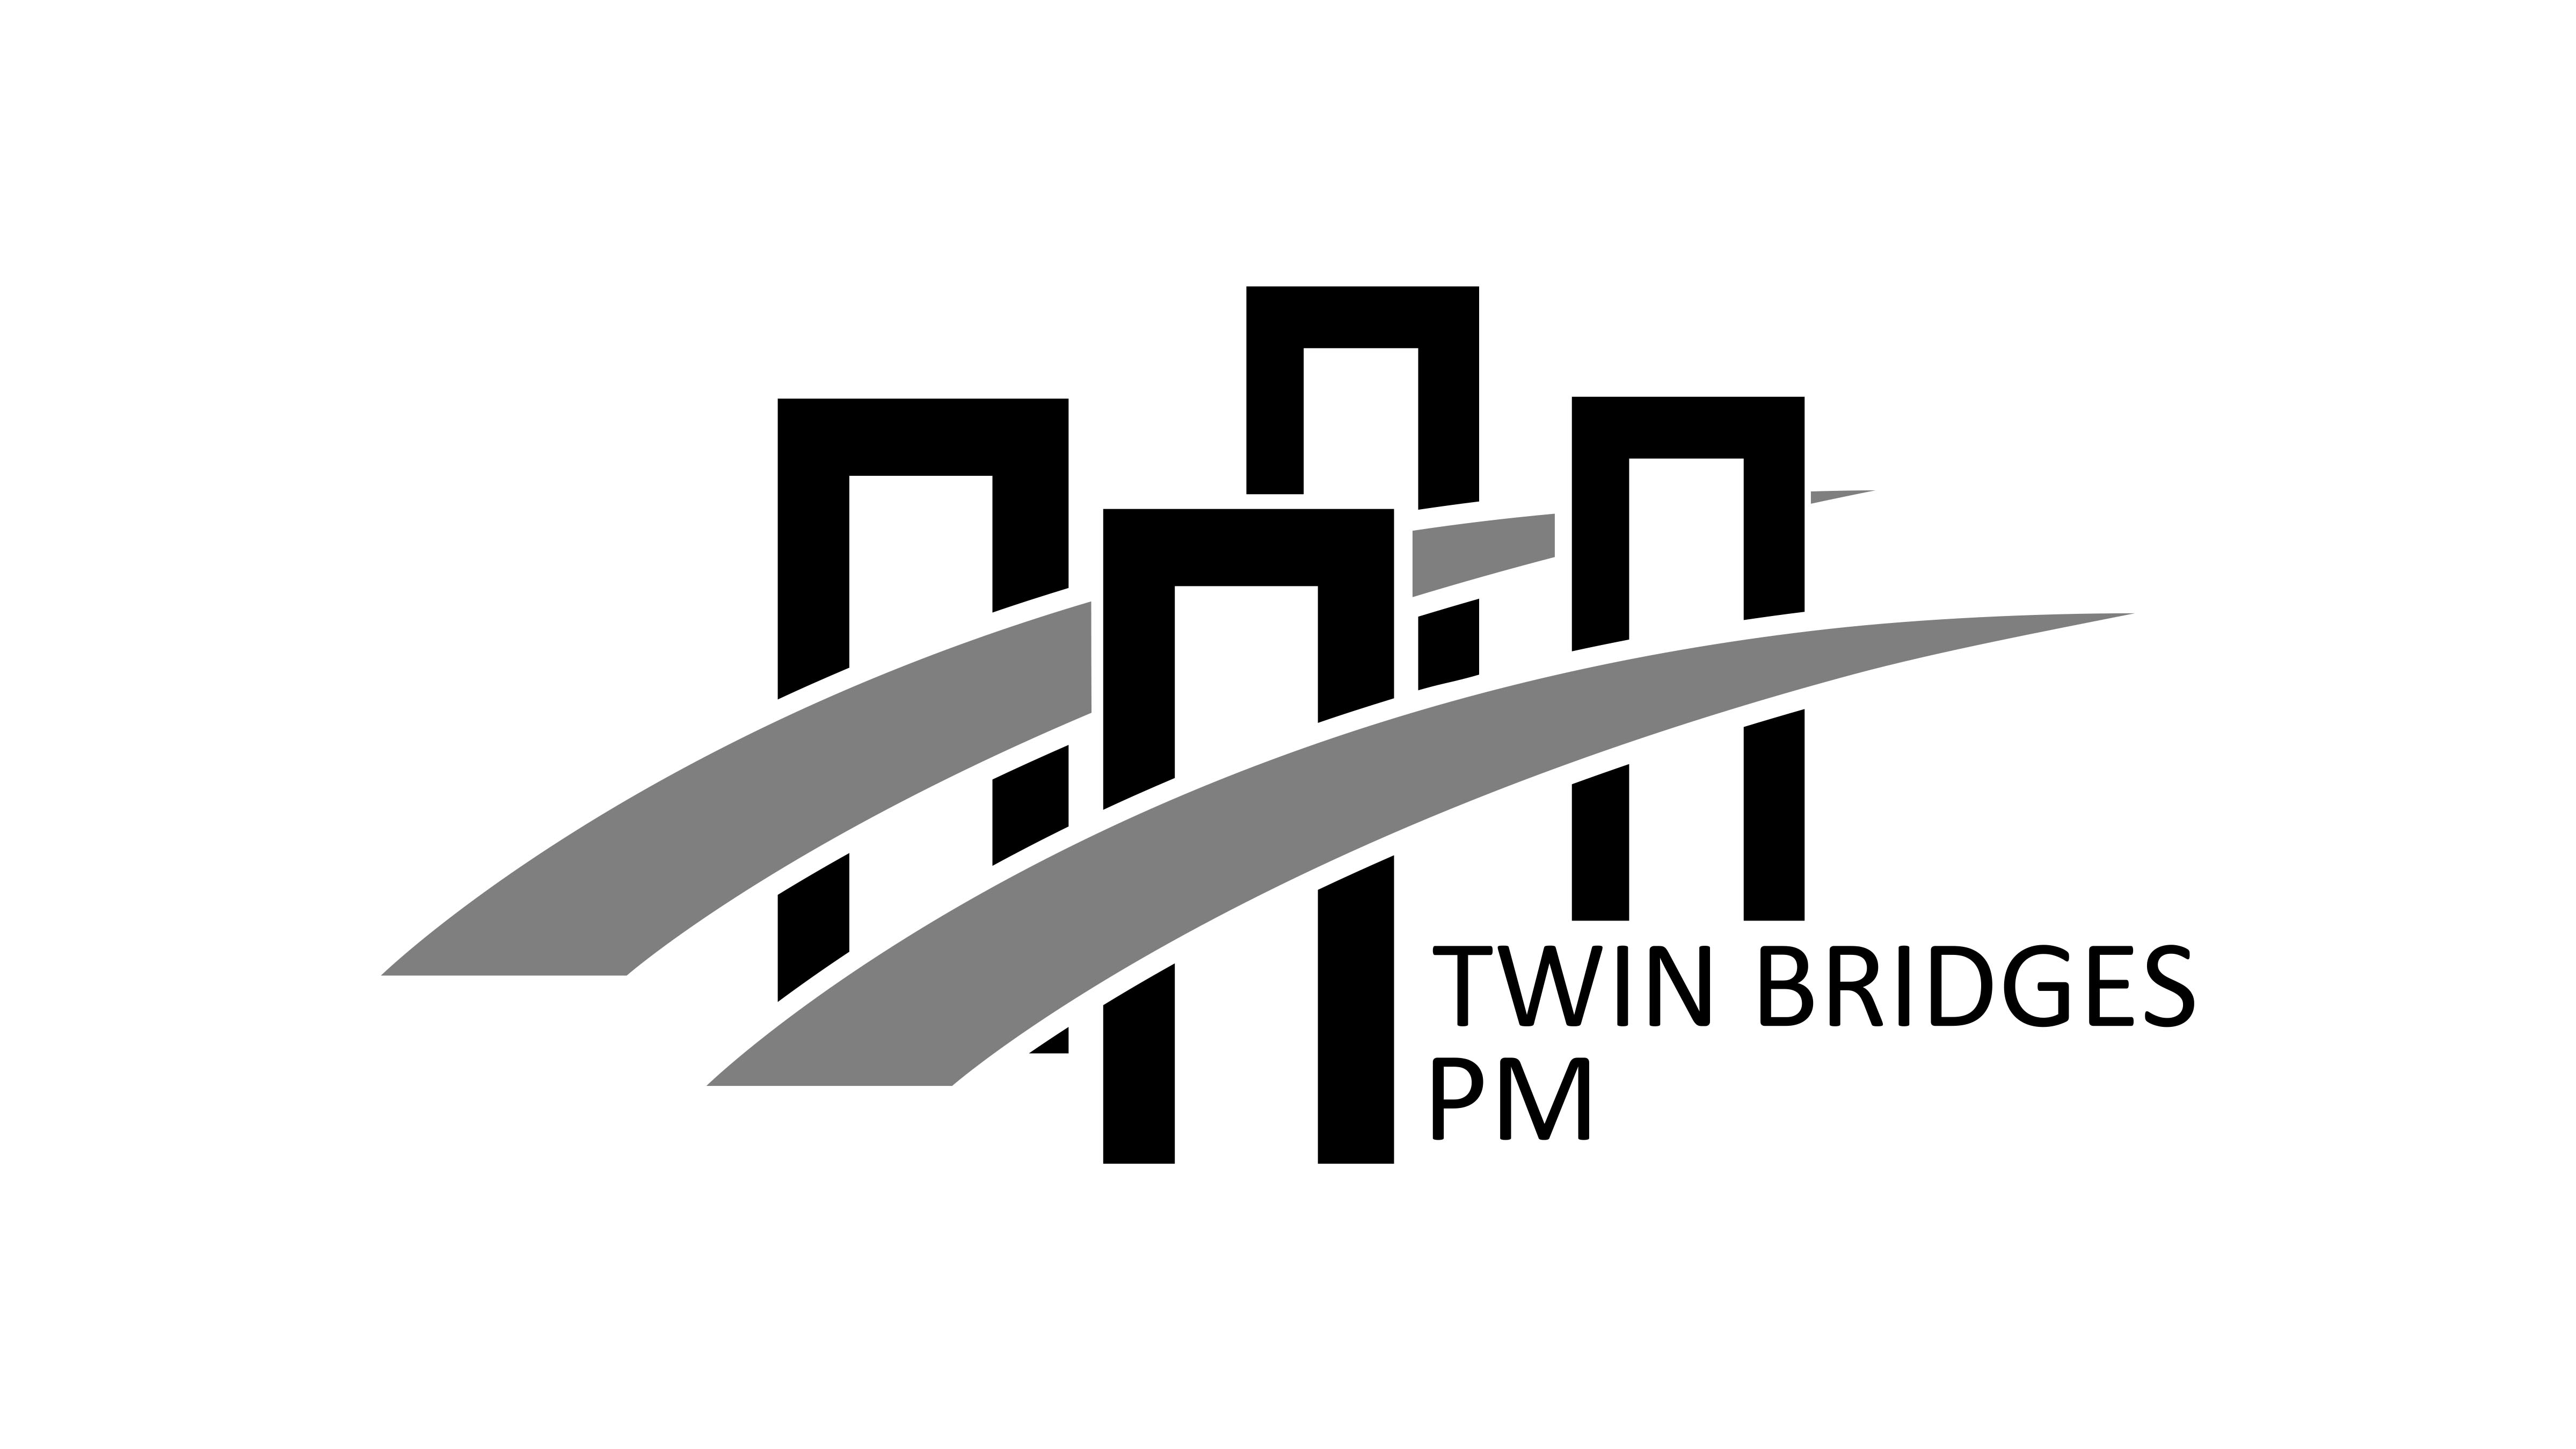 TWIN BRIDGES PROPERTY MANAGEMENT